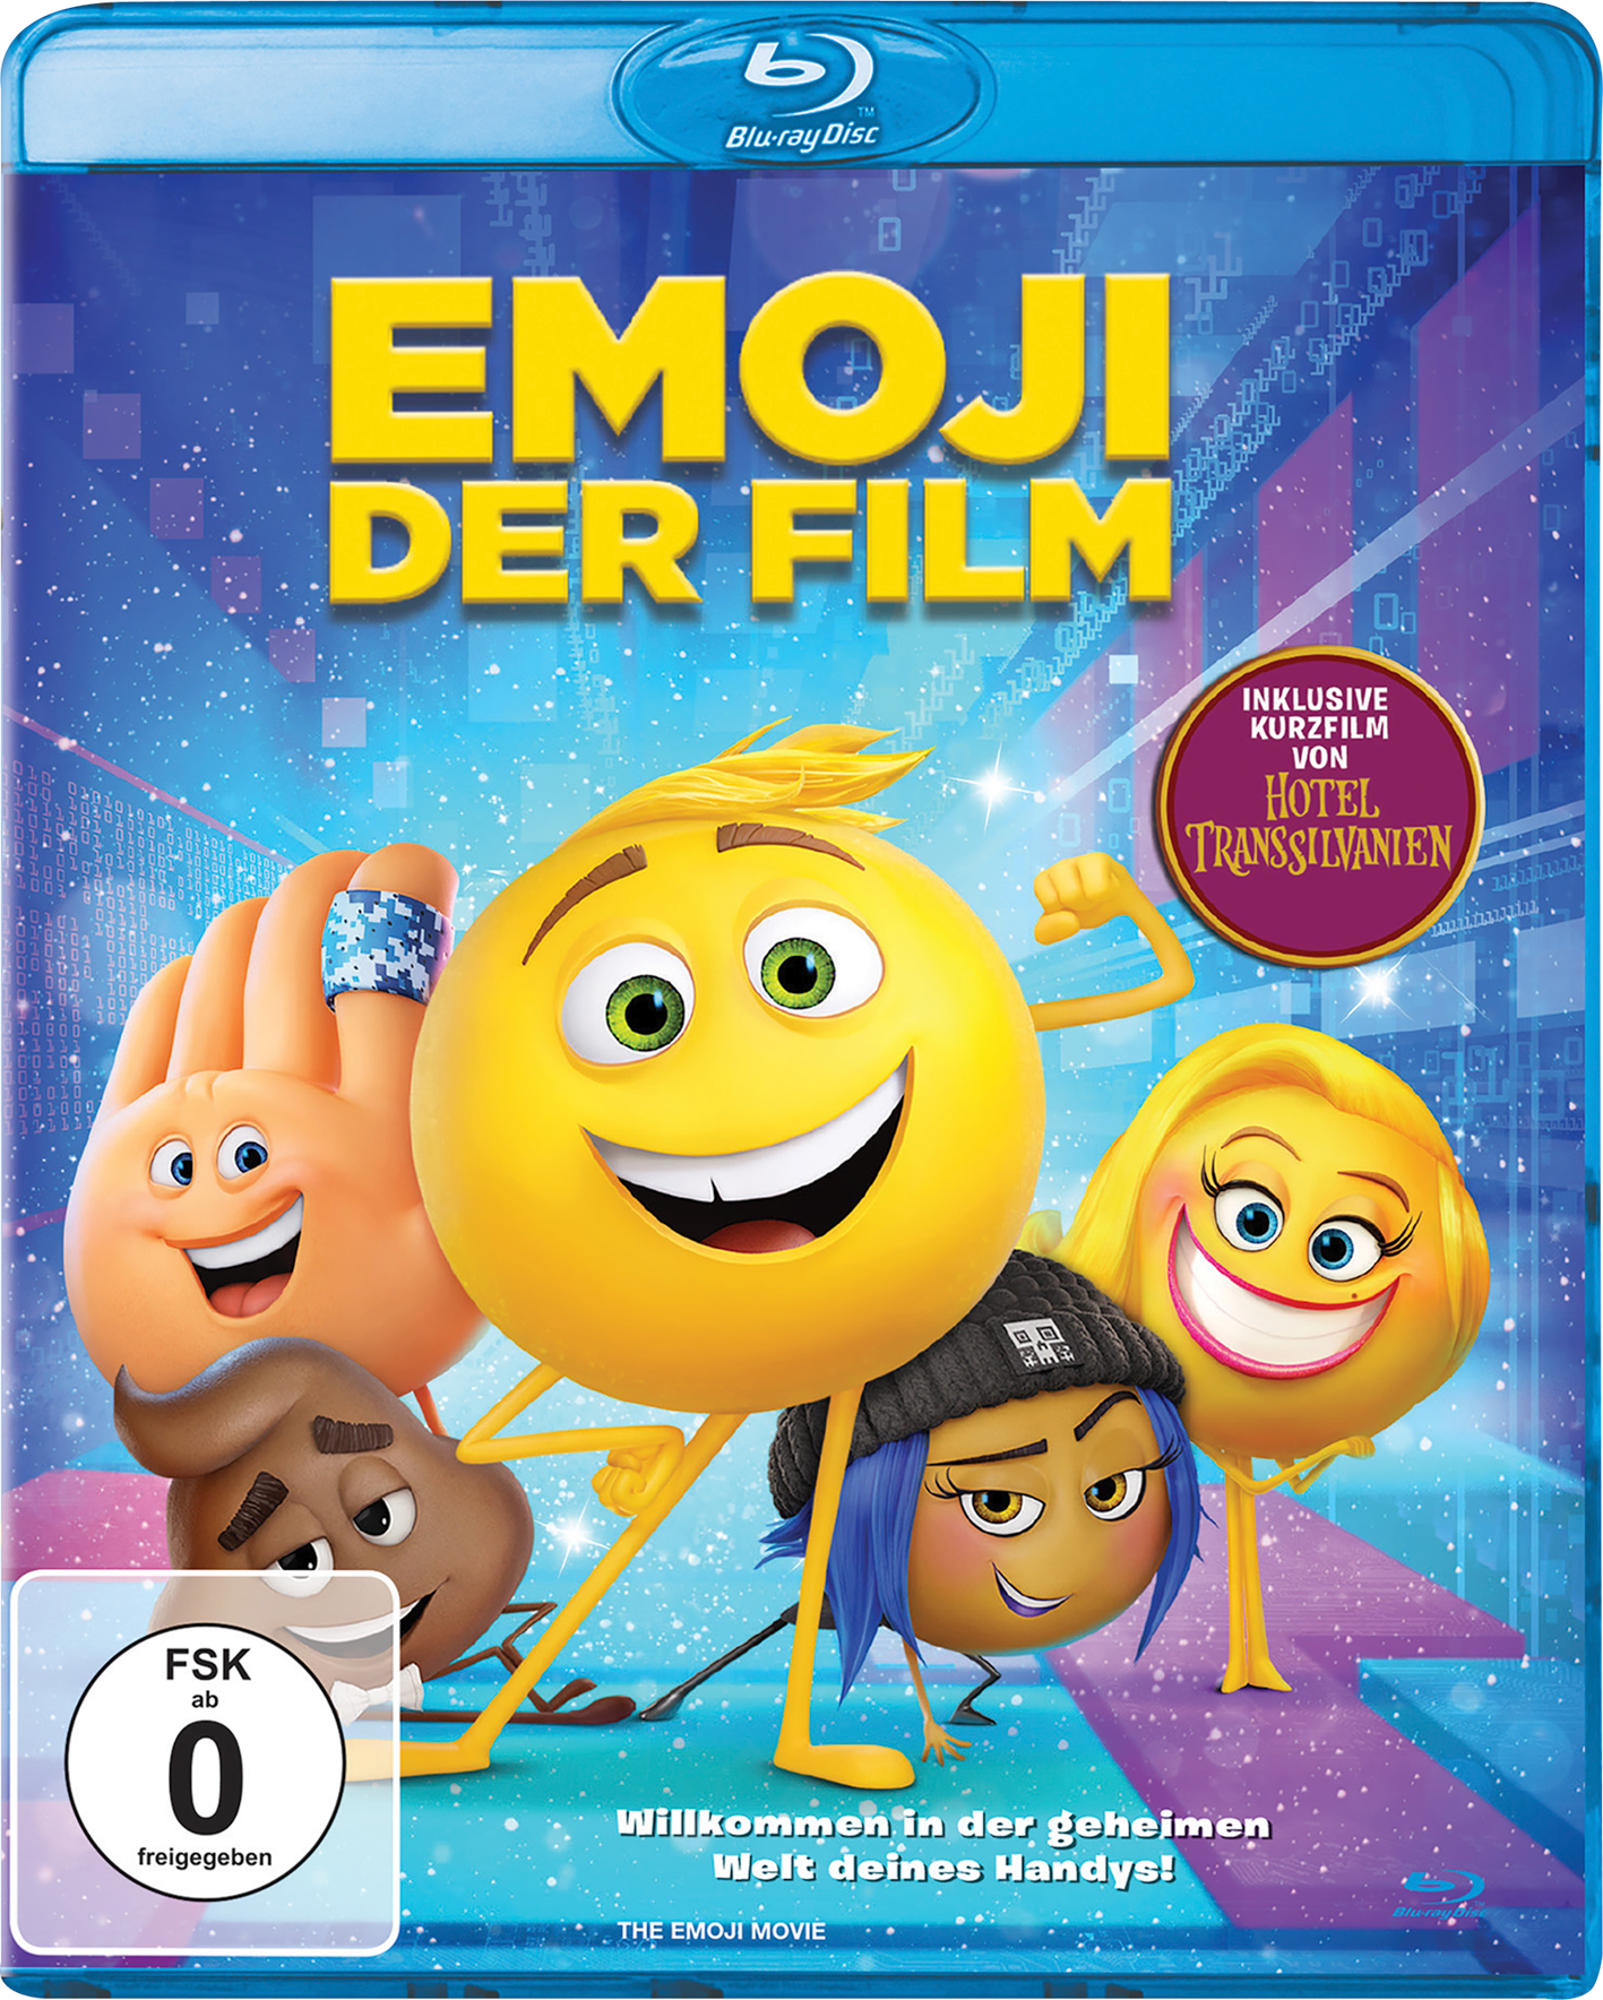 Der Film - Blu-ray Emoji